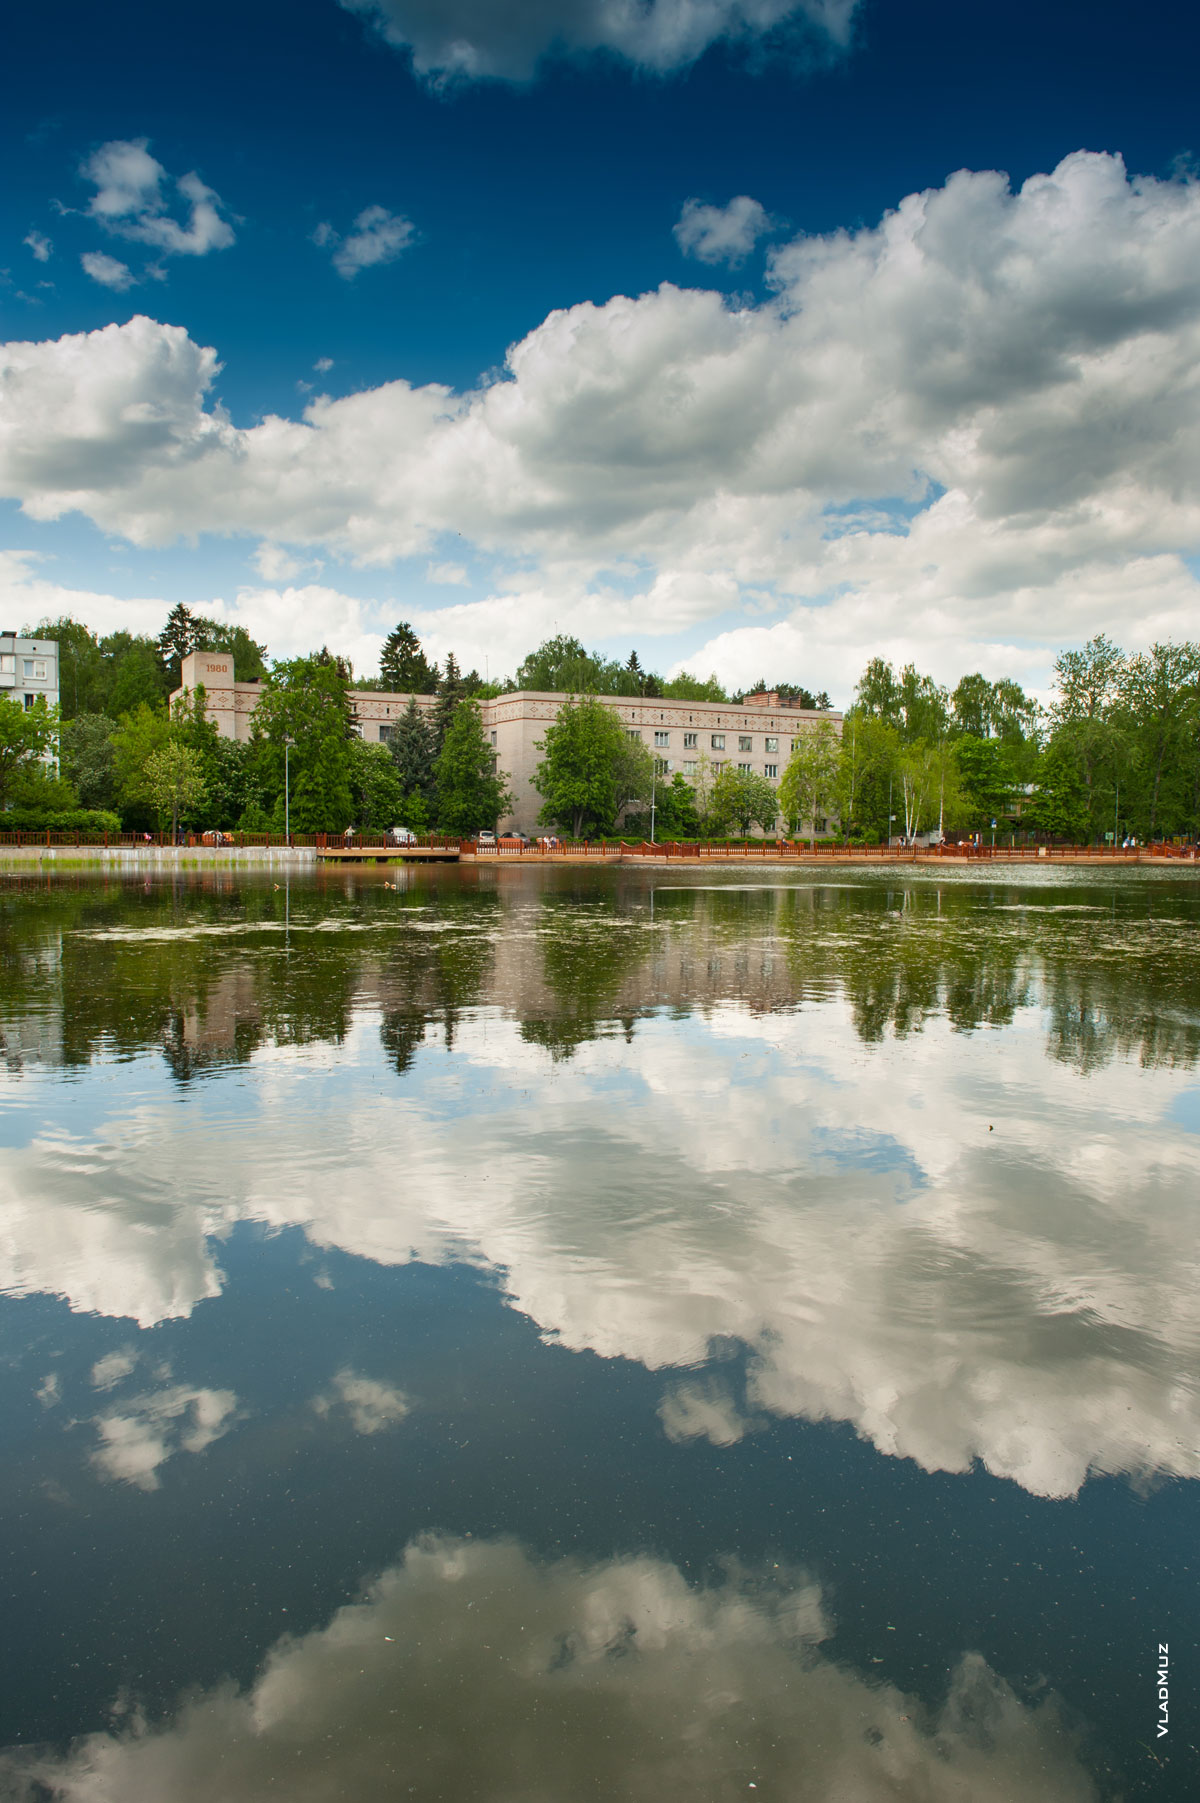 Фото с озером и гостиницей в мкрн. Юбилейном г. Королёва Московской области